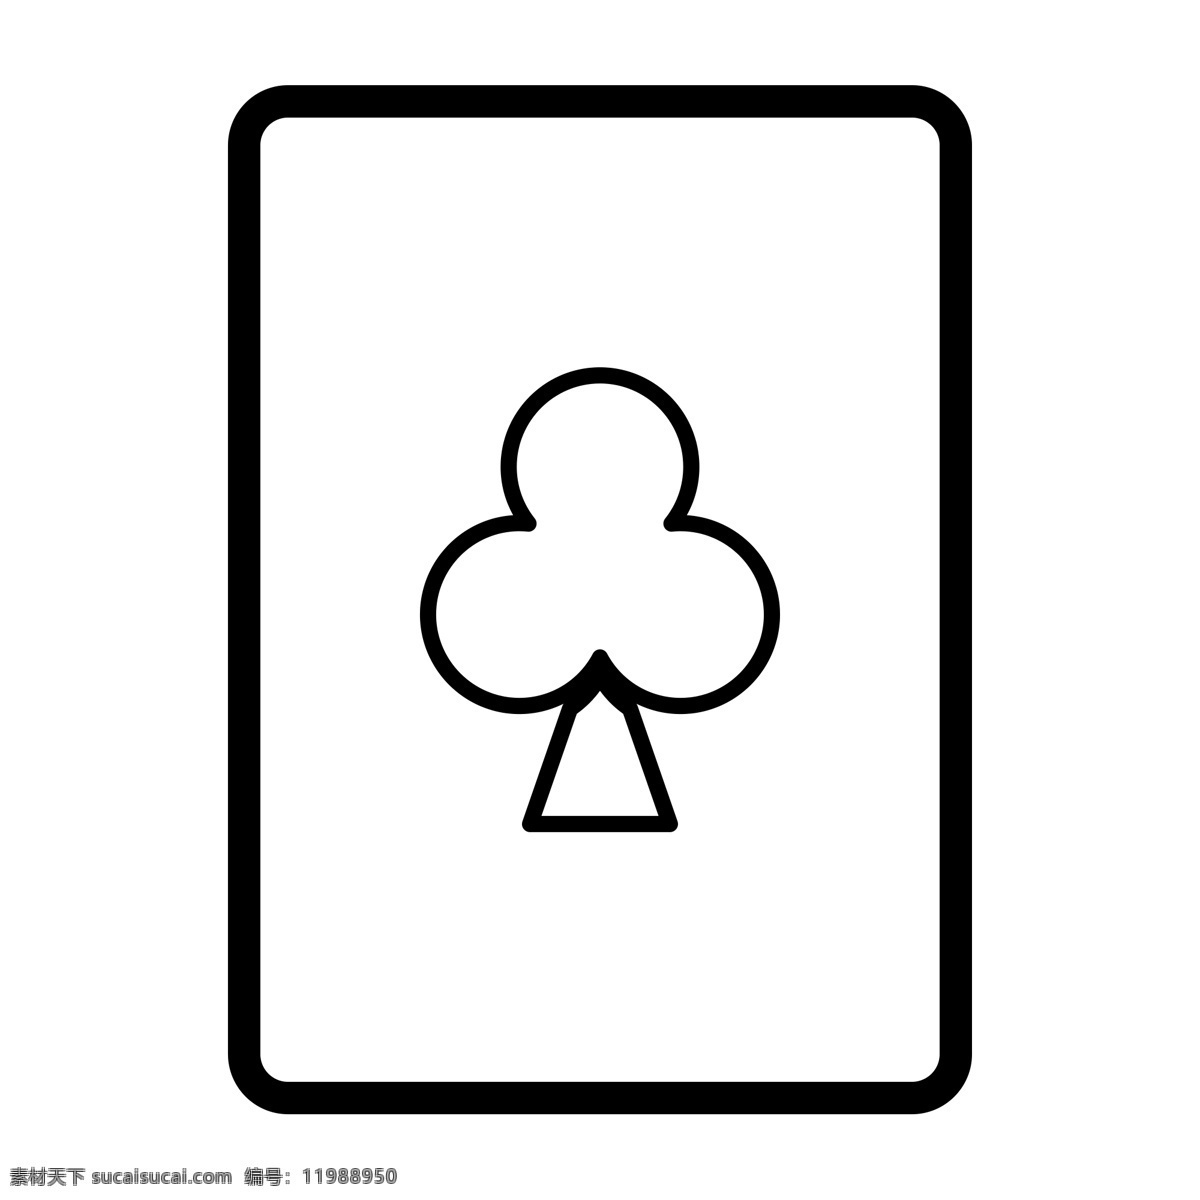 黑色 创意 扑克牌 元素 智力 游戏 玩耍 扁平化 ui 图标 卡通插画 圆角 线稿